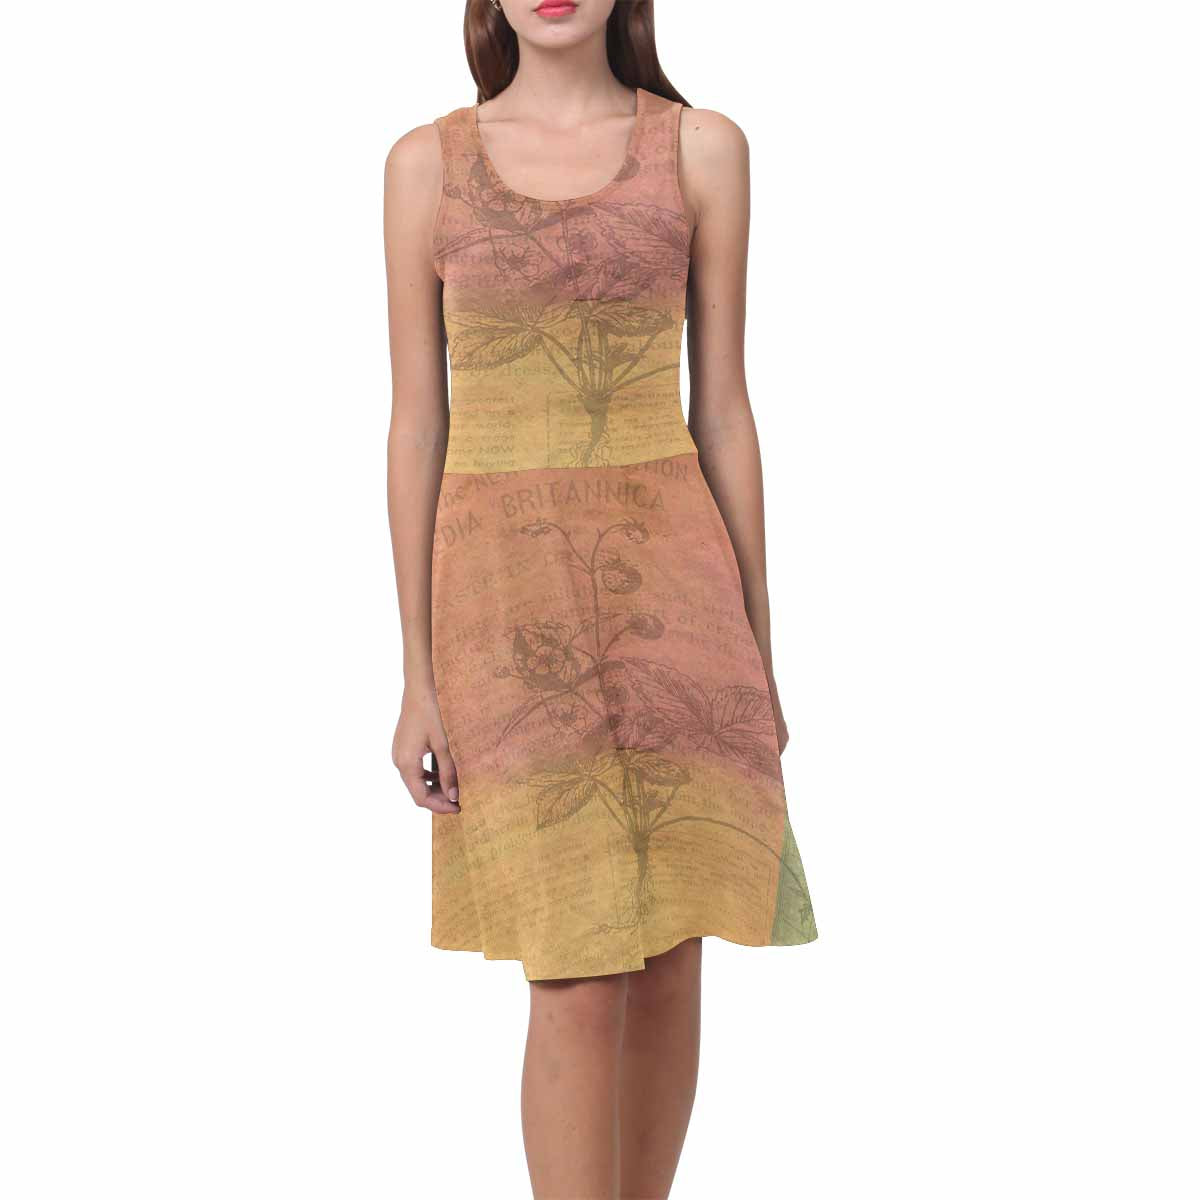 Antique General summer dress, MODEL 09534, design 31